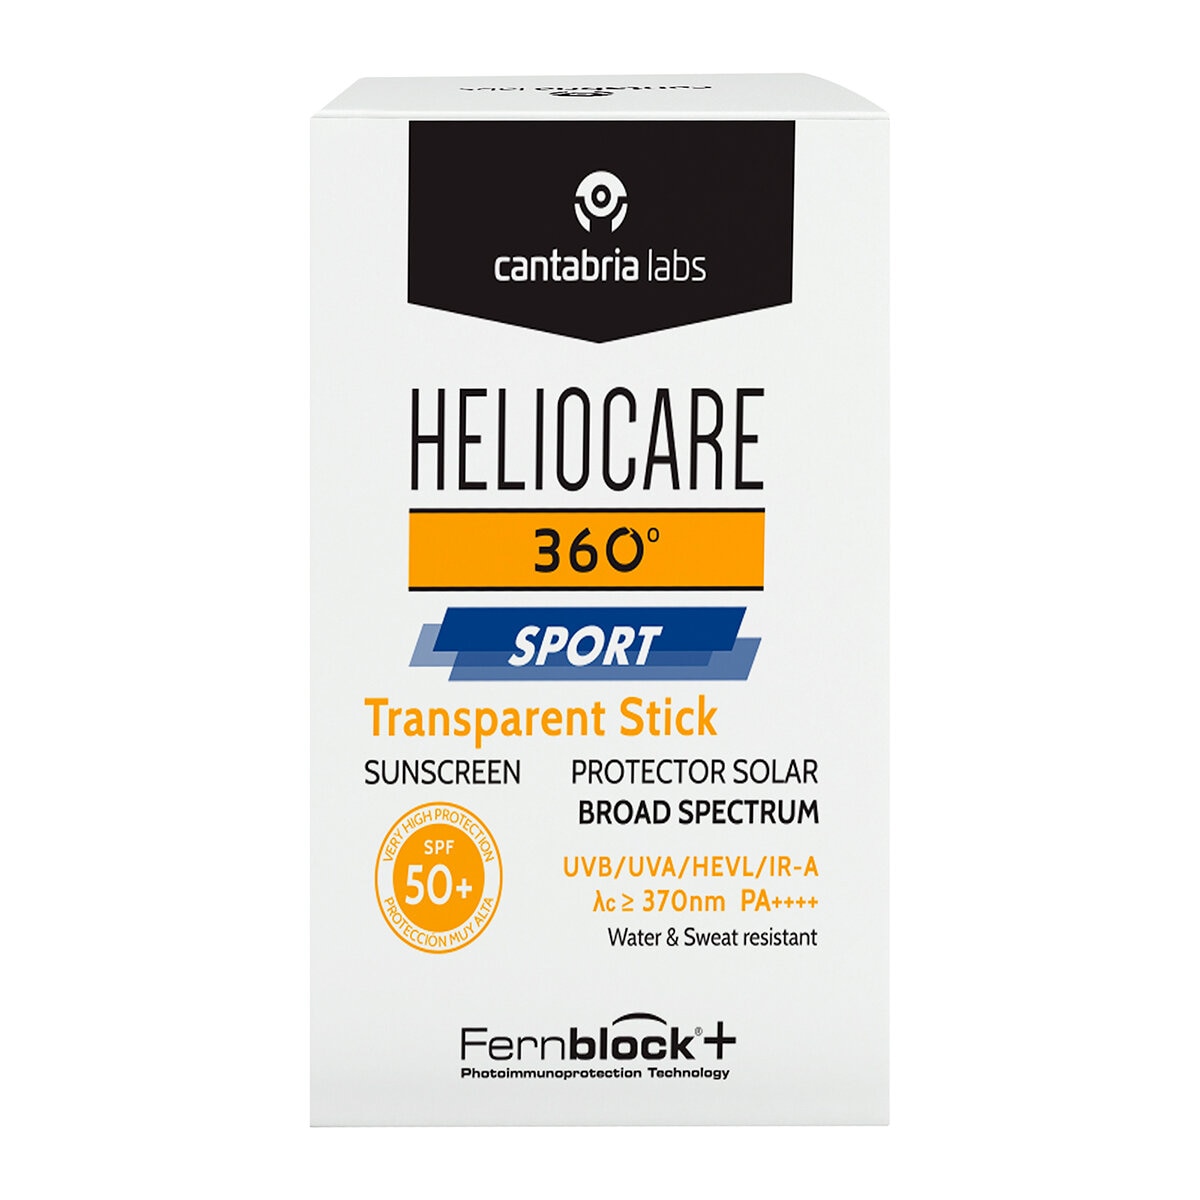 Heliocare 360° Sport Transparent Stick SPF 50+